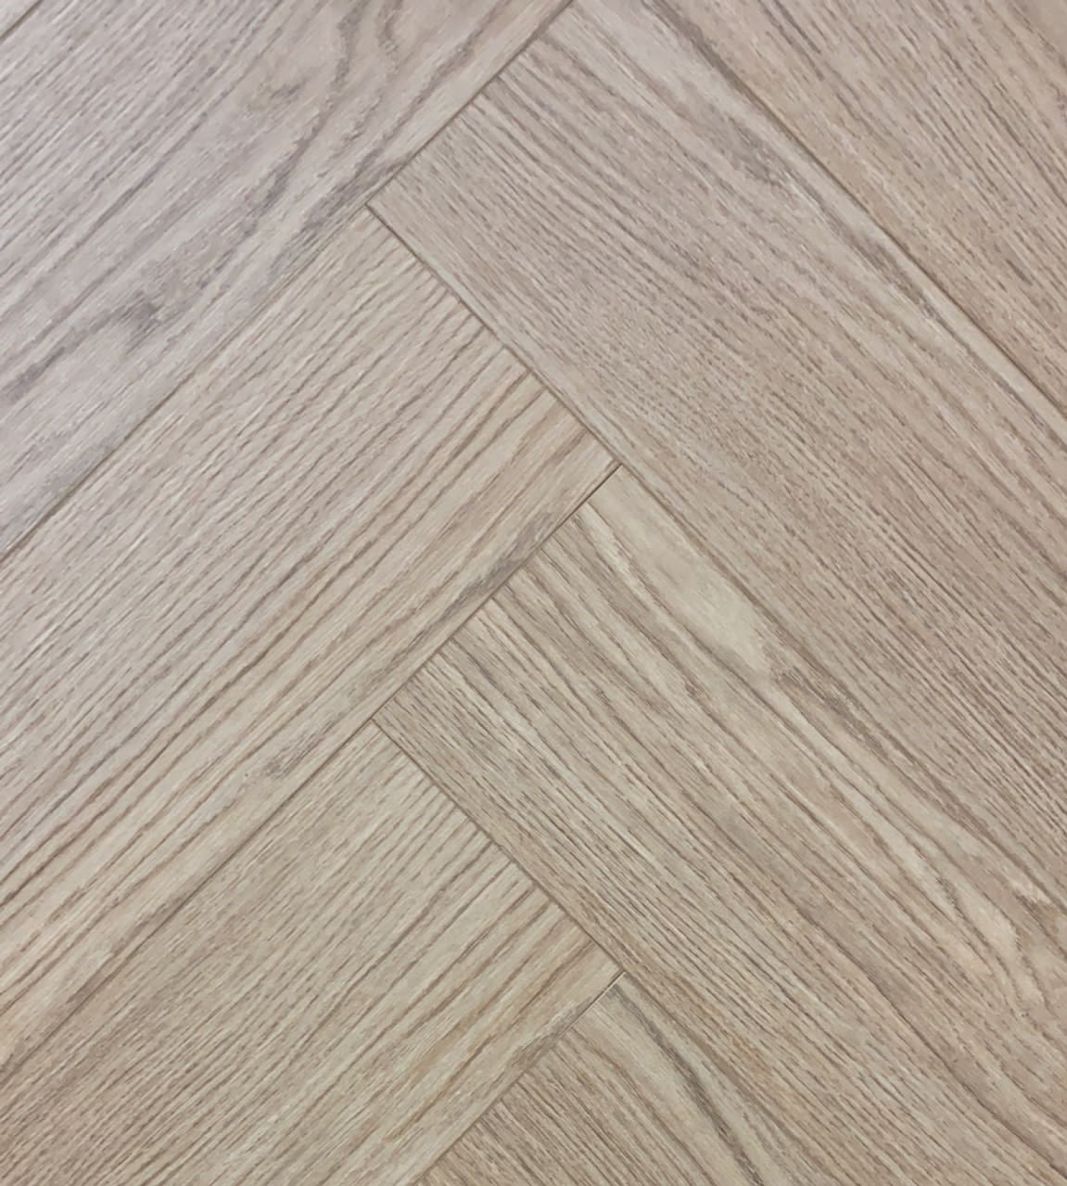 Grote planken van Montinique laminaatvloer met de uitstraling van echt hout.